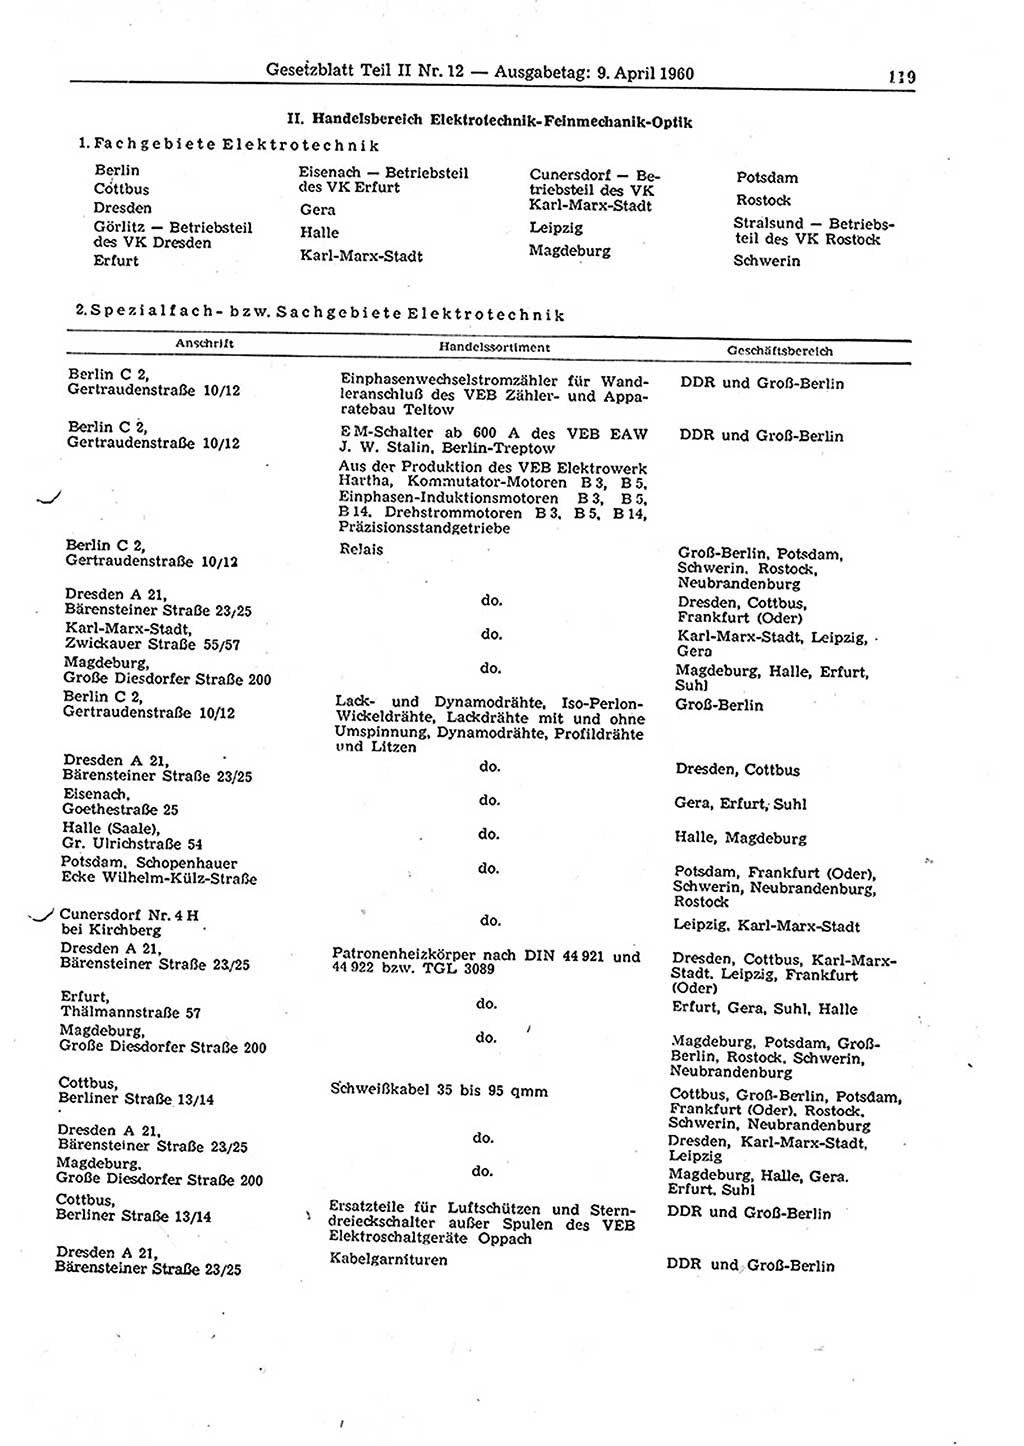 Gesetzblatt (GBl.) der Deutschen Demokratischen Republik (DDR) Teil ⅠⅠ 1960, Seite 119 (GBl. DDR ⅠⅠ 1960, S. 119)